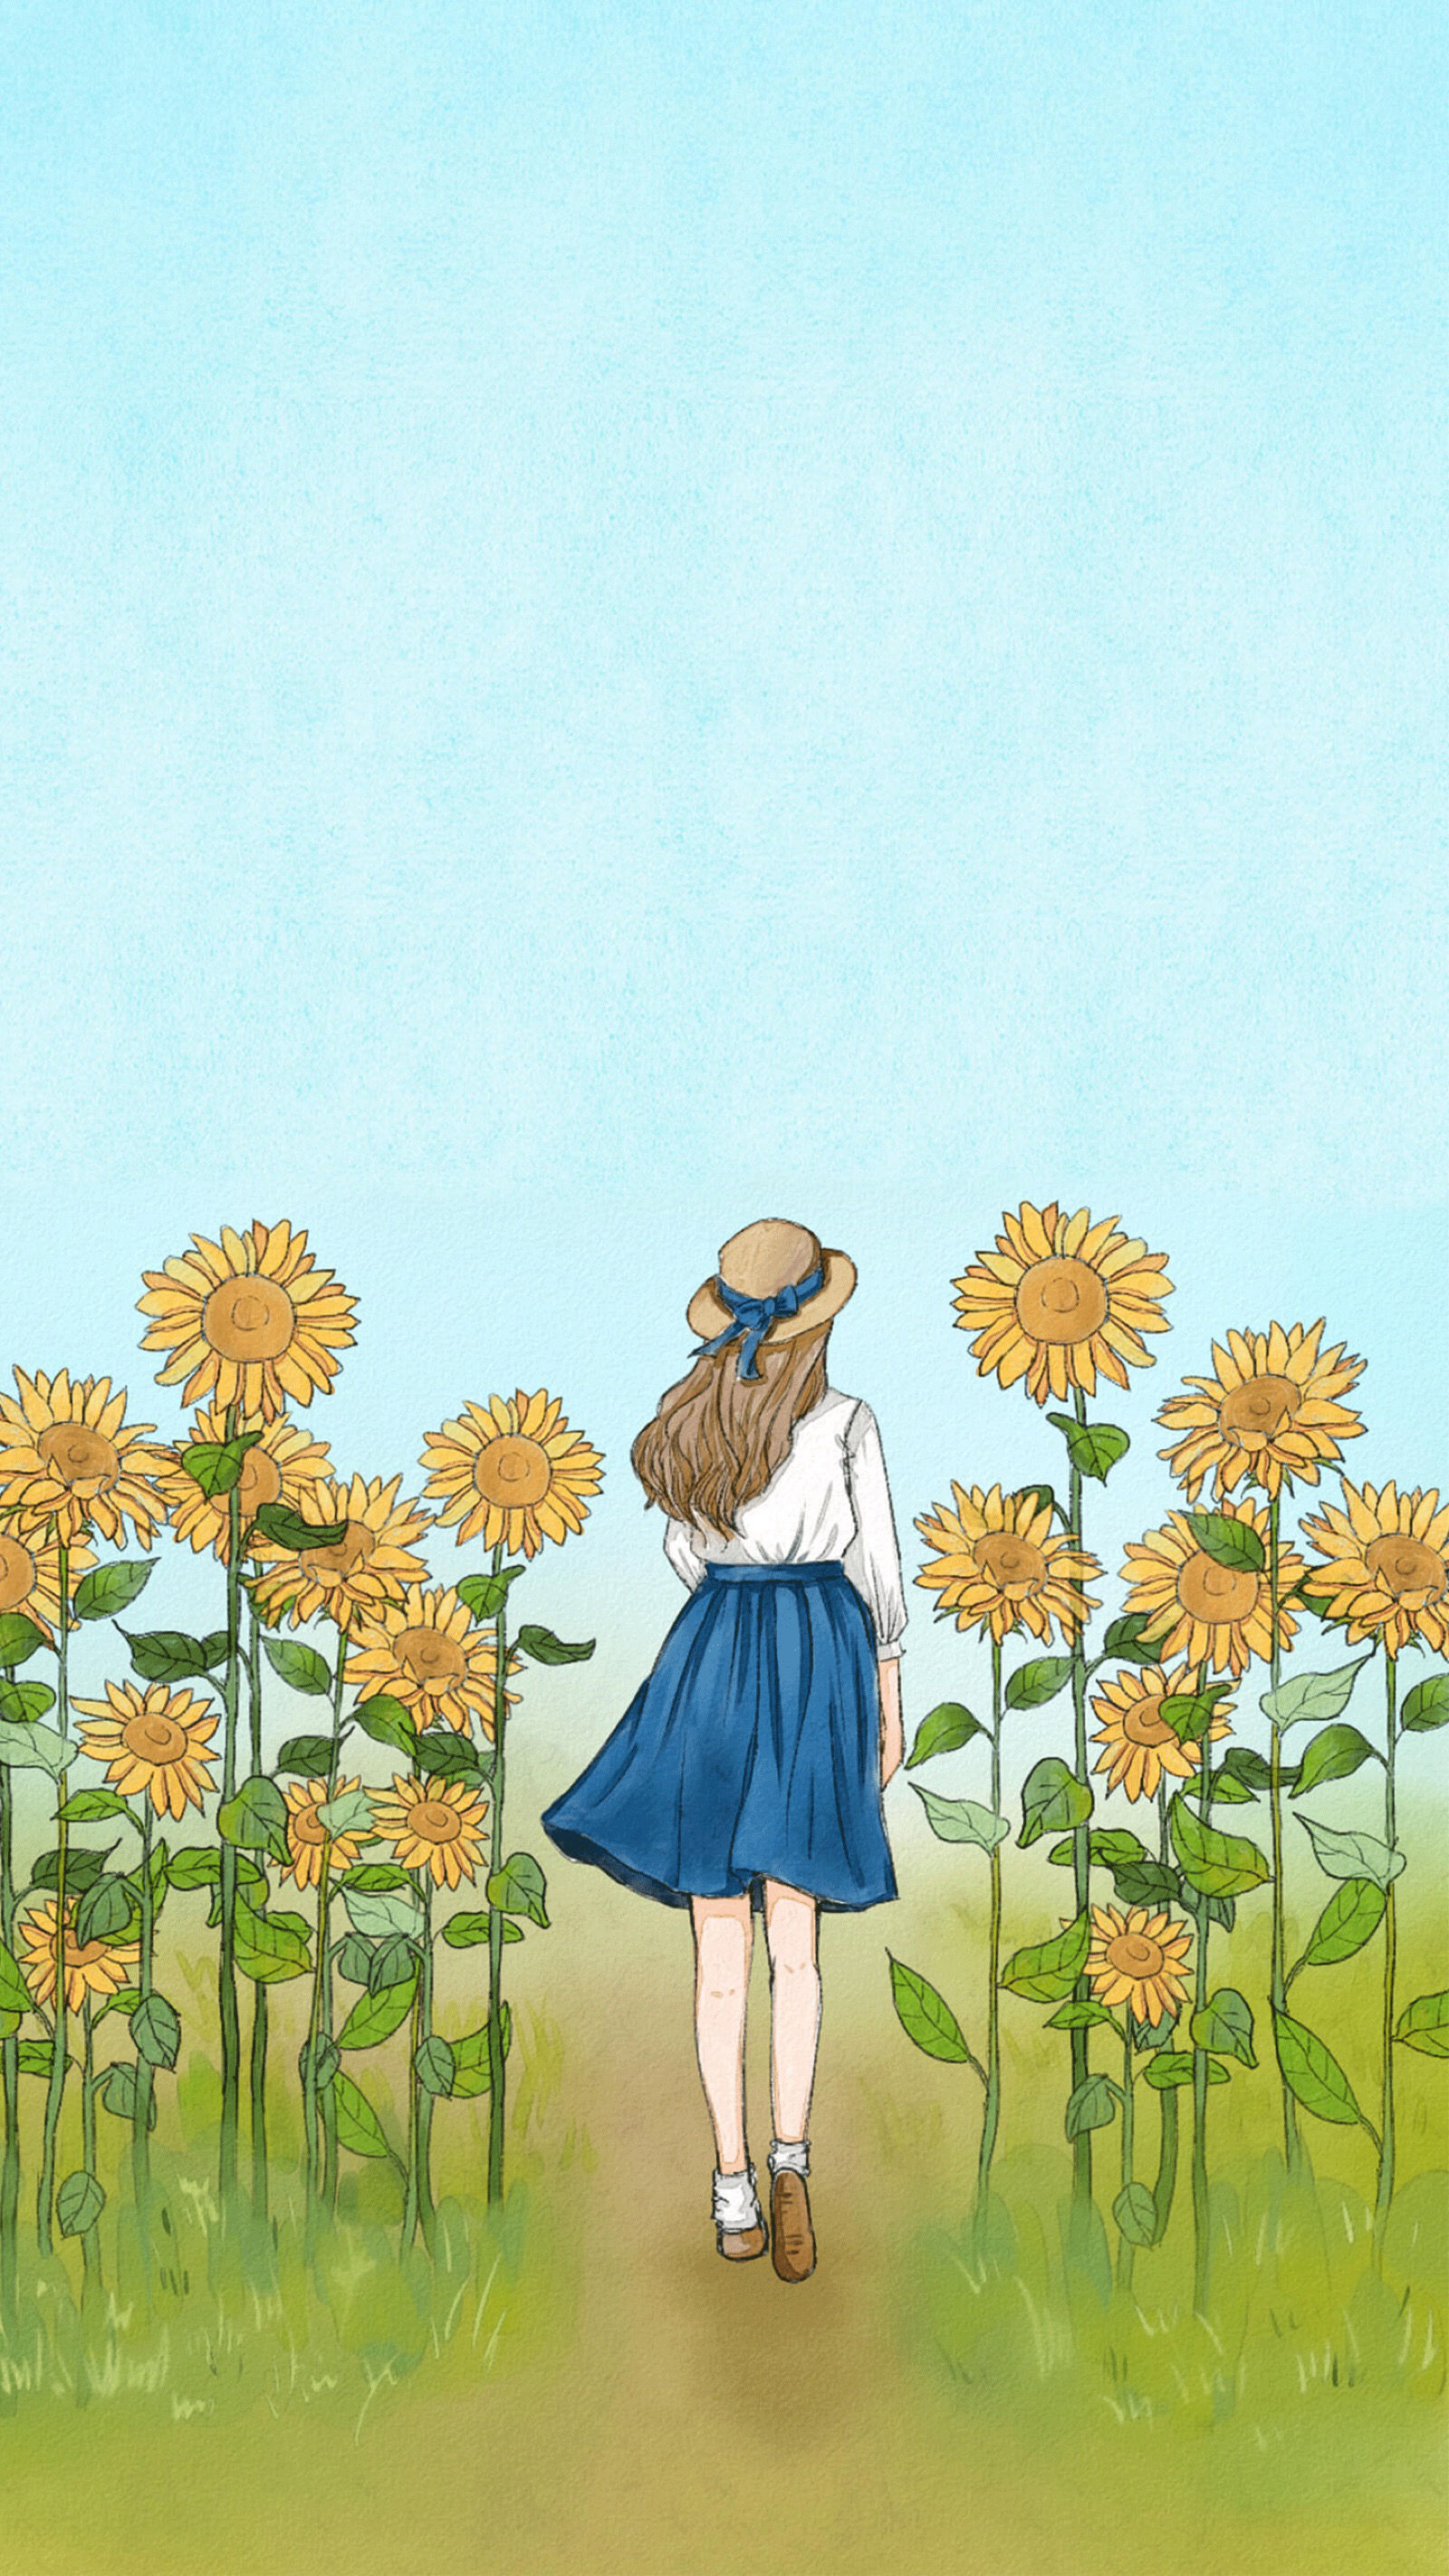 手绘的向日葵少女插画黄黄的画面好唯美图片